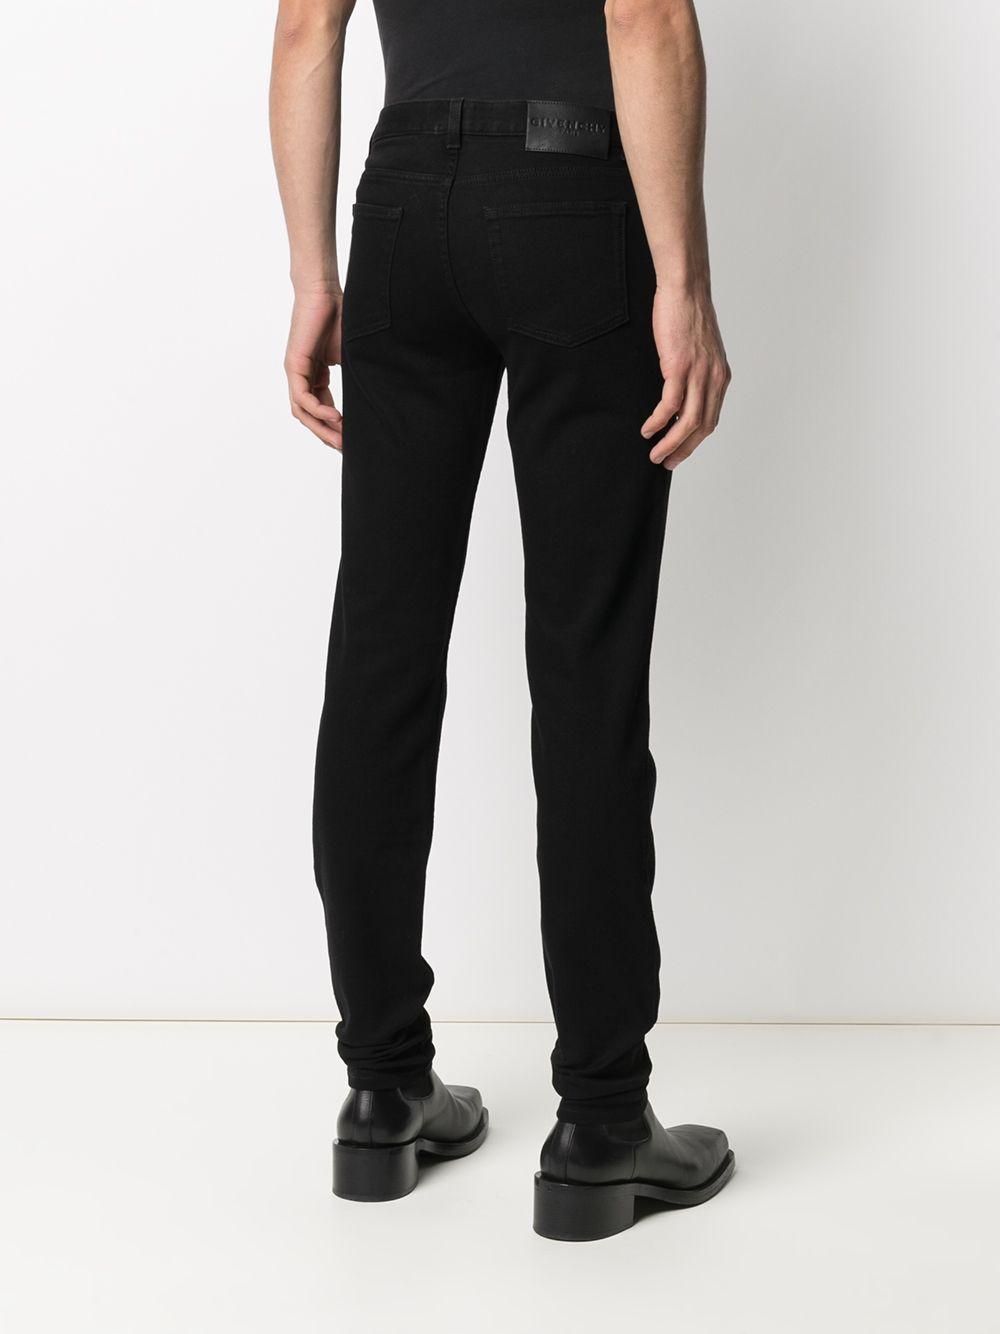 Givenchy Denim Jeans Black for Men - Lyst